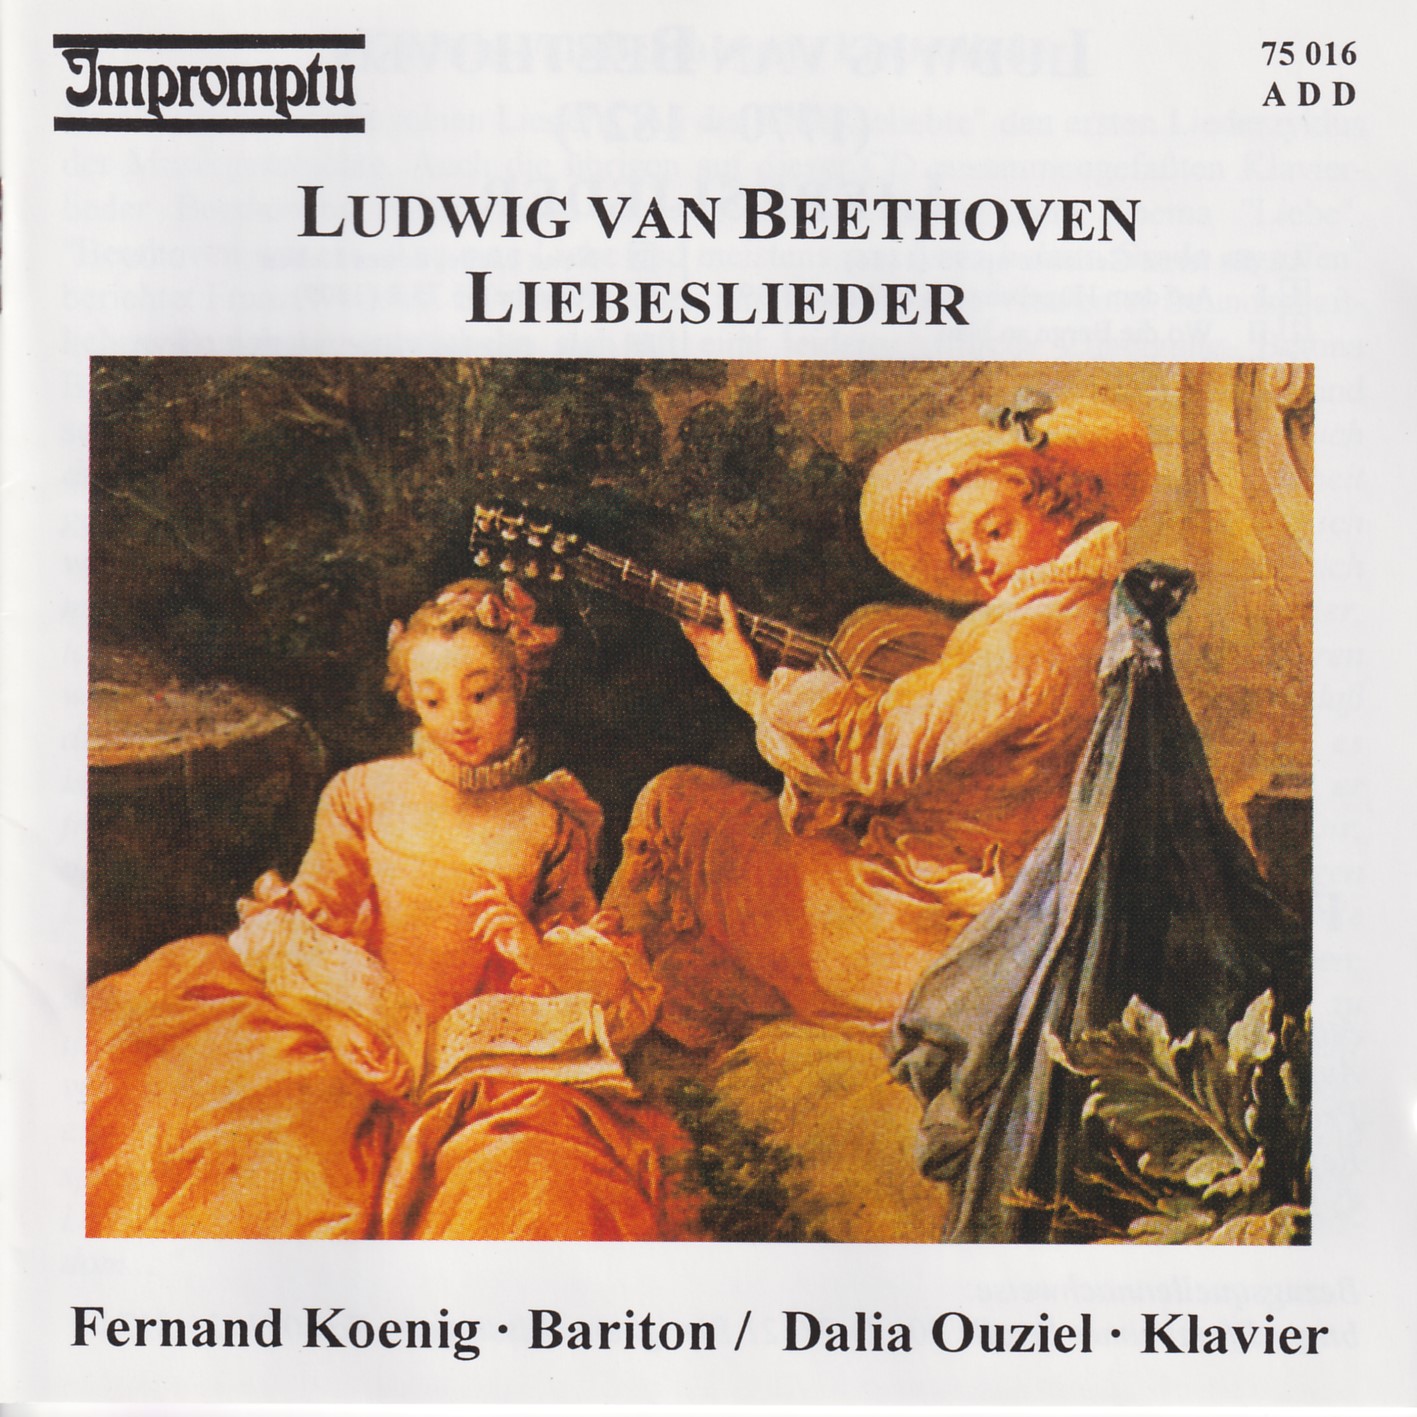 Ludwig van Beethoven - Liebeslieder